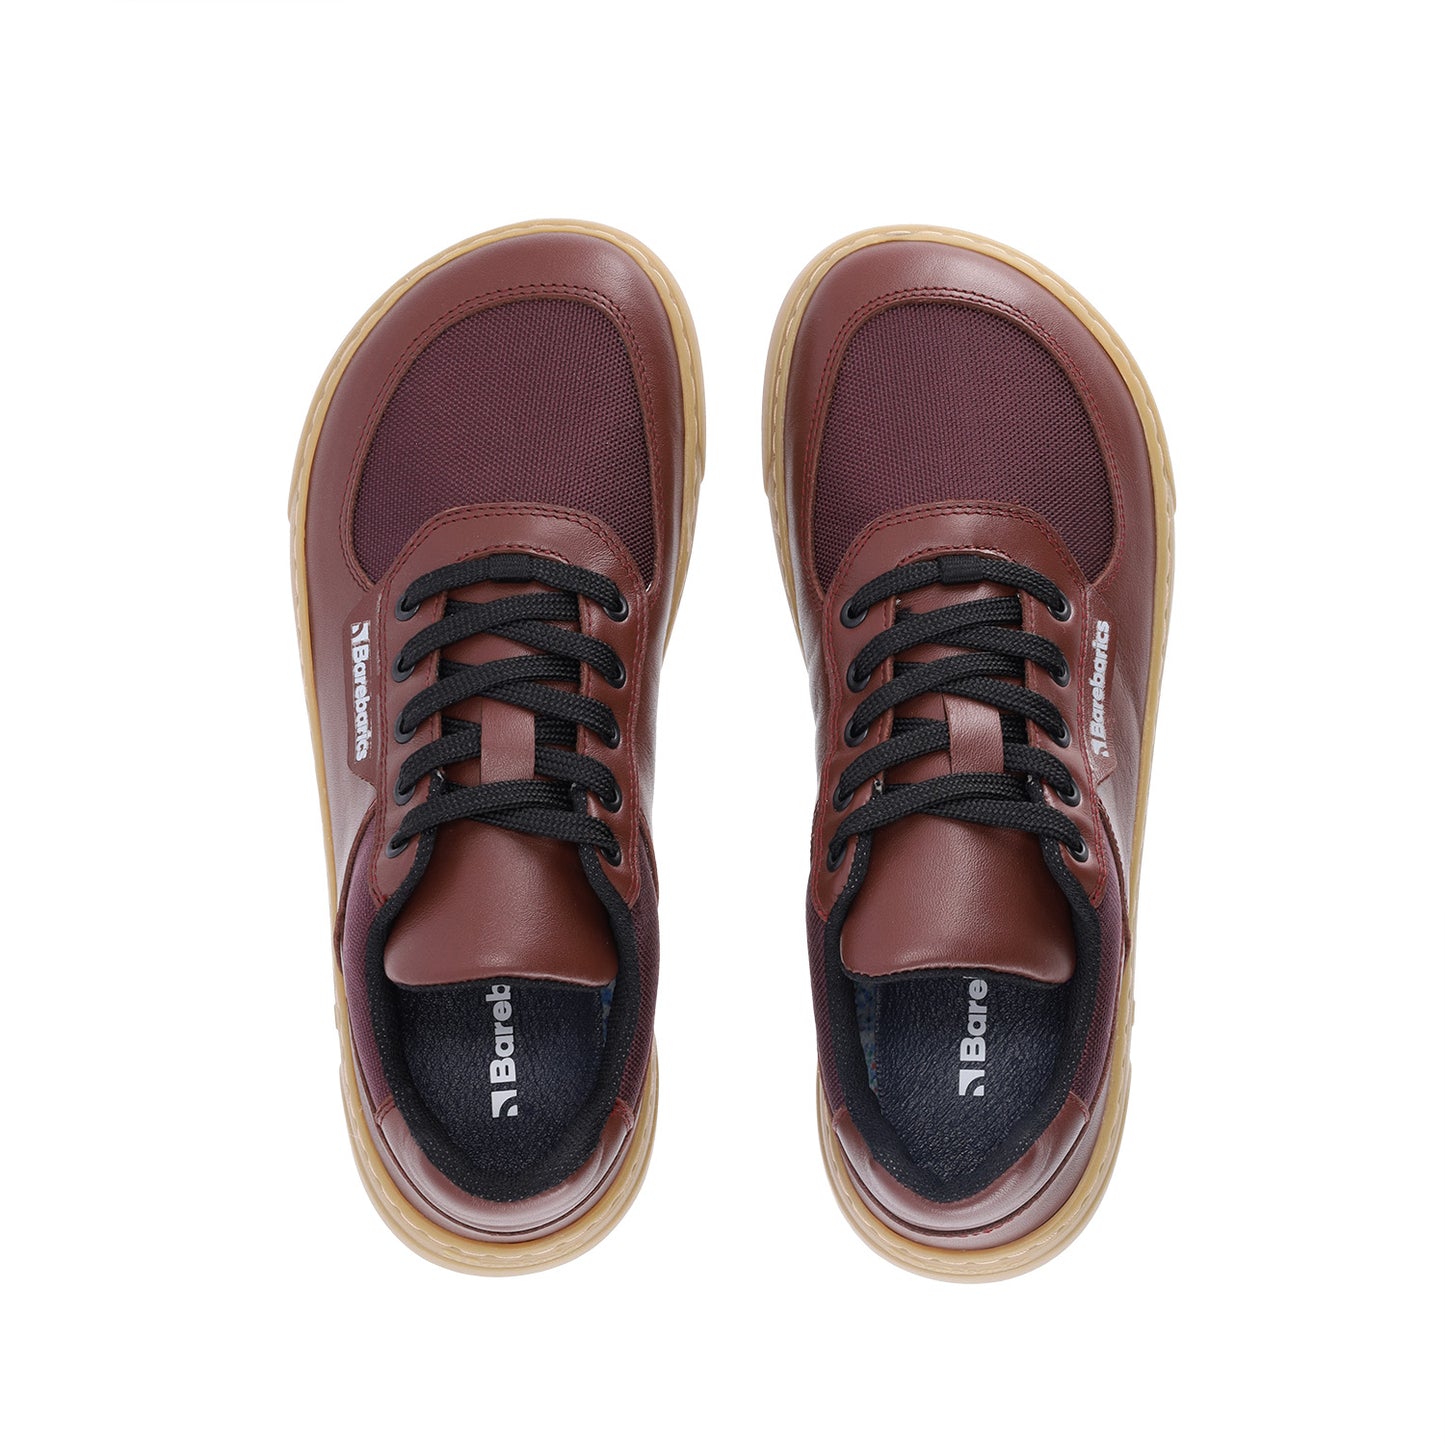 Barebarics Bravo Barefoot Sneakers - Maroon Brown